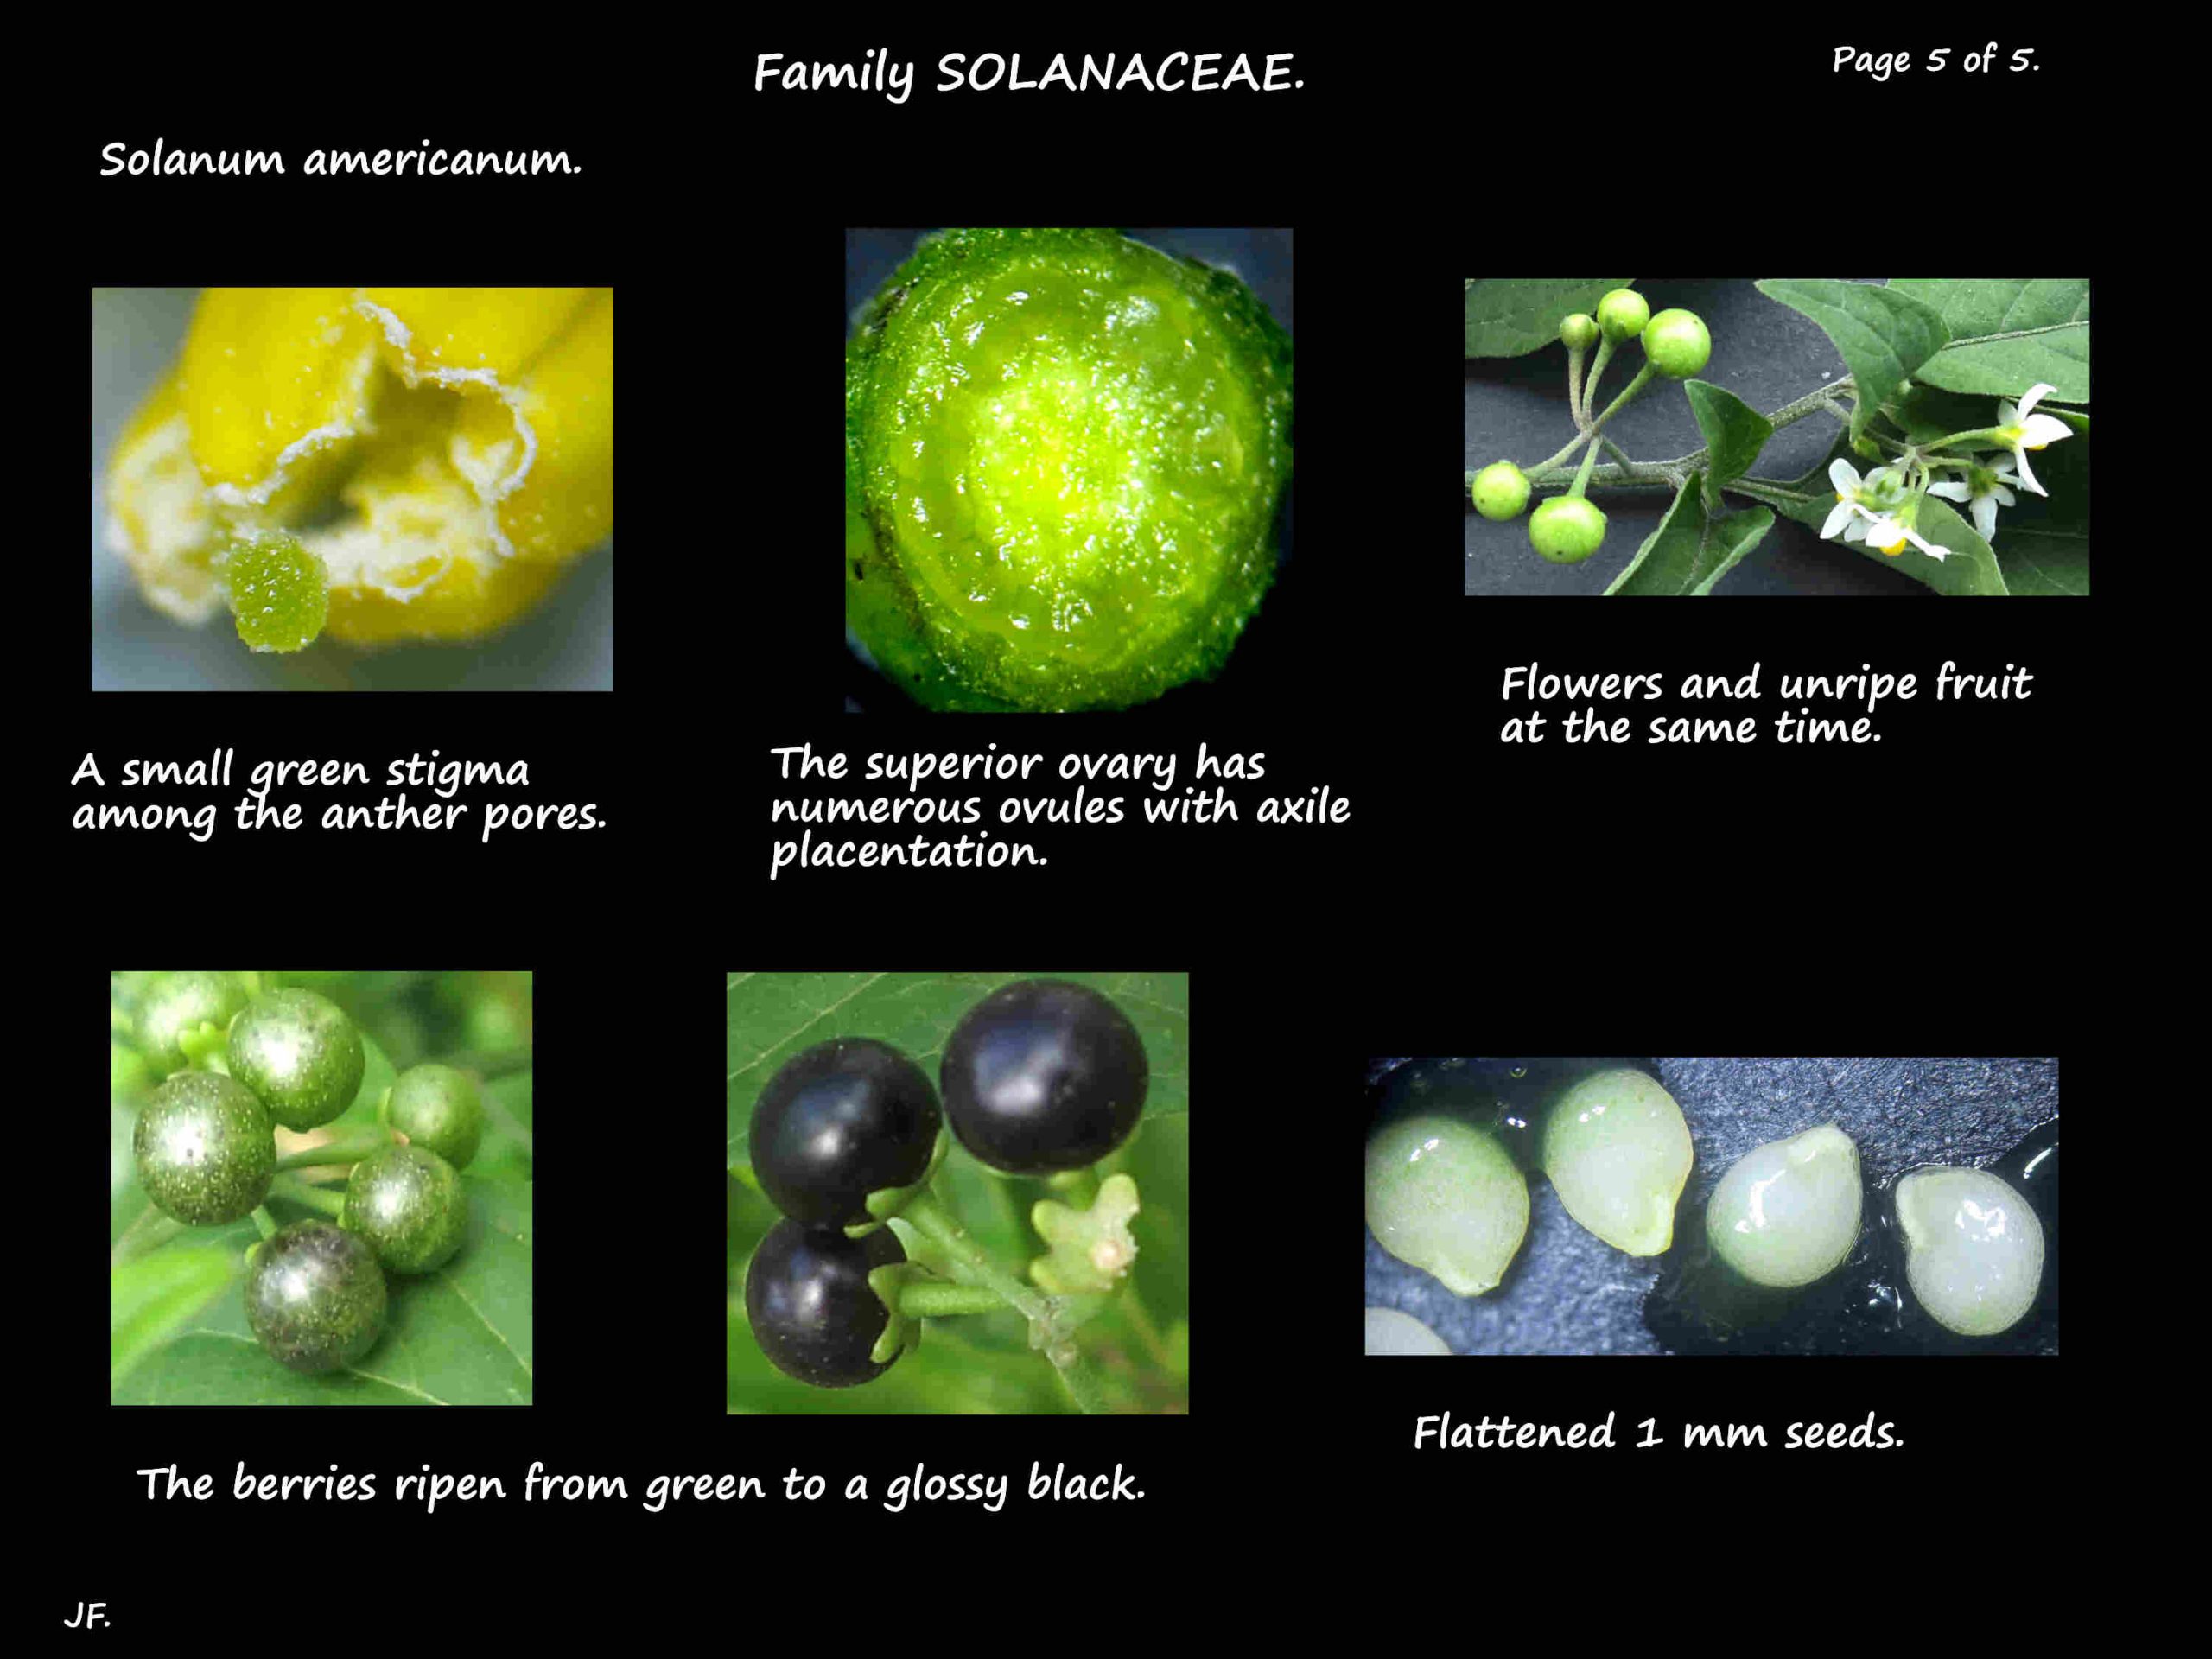 5 Solanum americanum berries